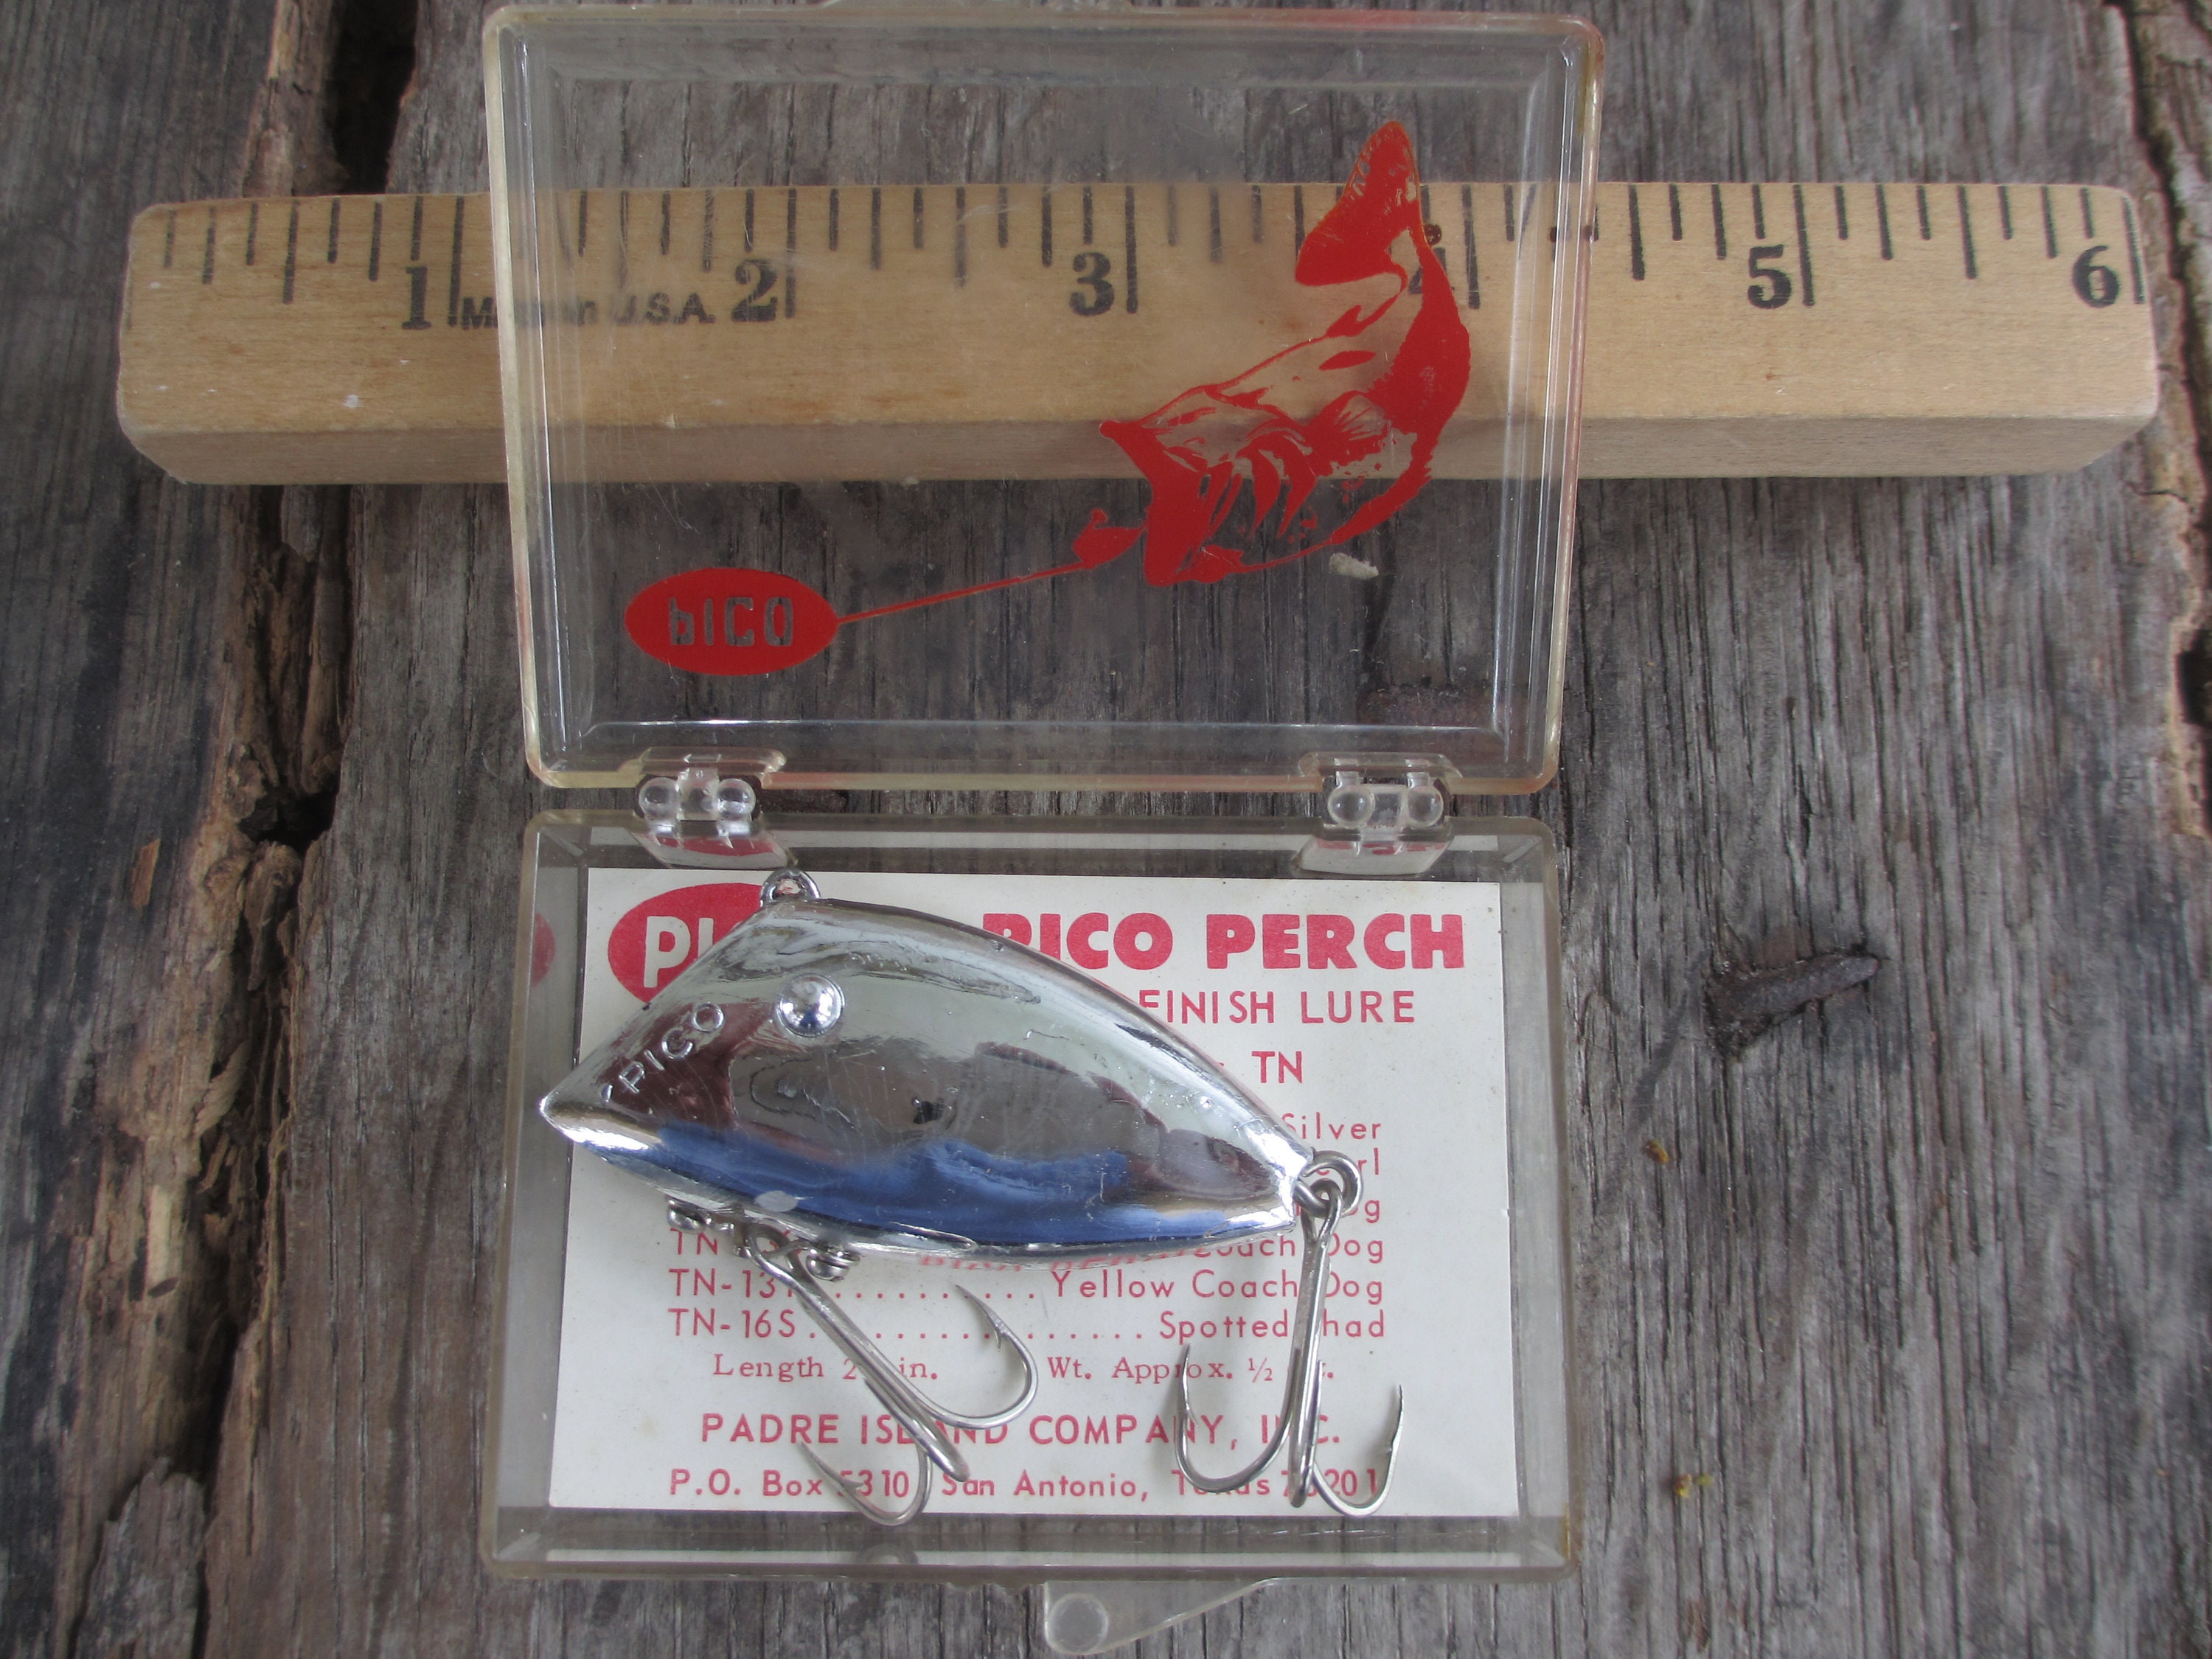 Vintage Fishing Lures / Pico Perch and Original Pico Box/ Nice